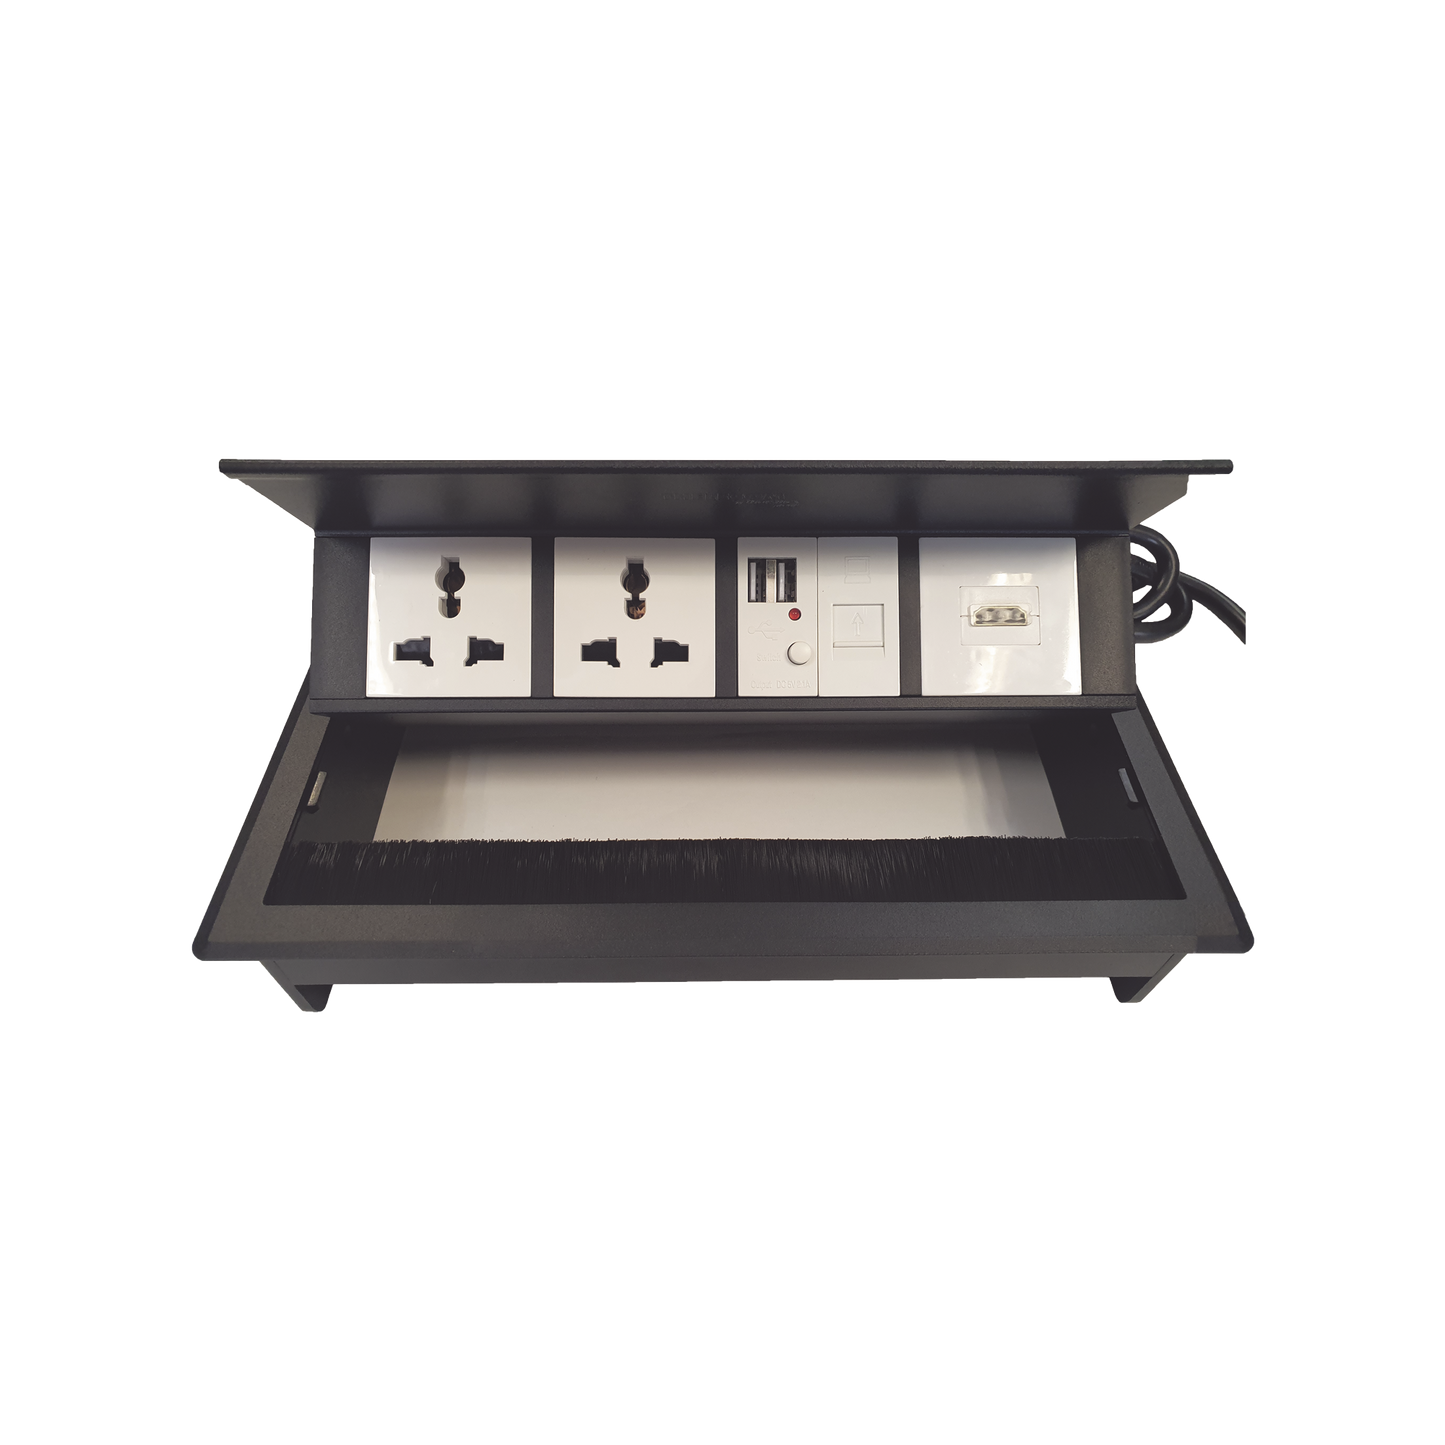 Caja Horizontal tipo Hub para escritorio color negro, con 1 Puerto HDMI Hembra-Hembra, 1 puerto RJ45 Cat6,  2 Puertos USB (Solo carga),  y 2 Contactos eléctricos universales